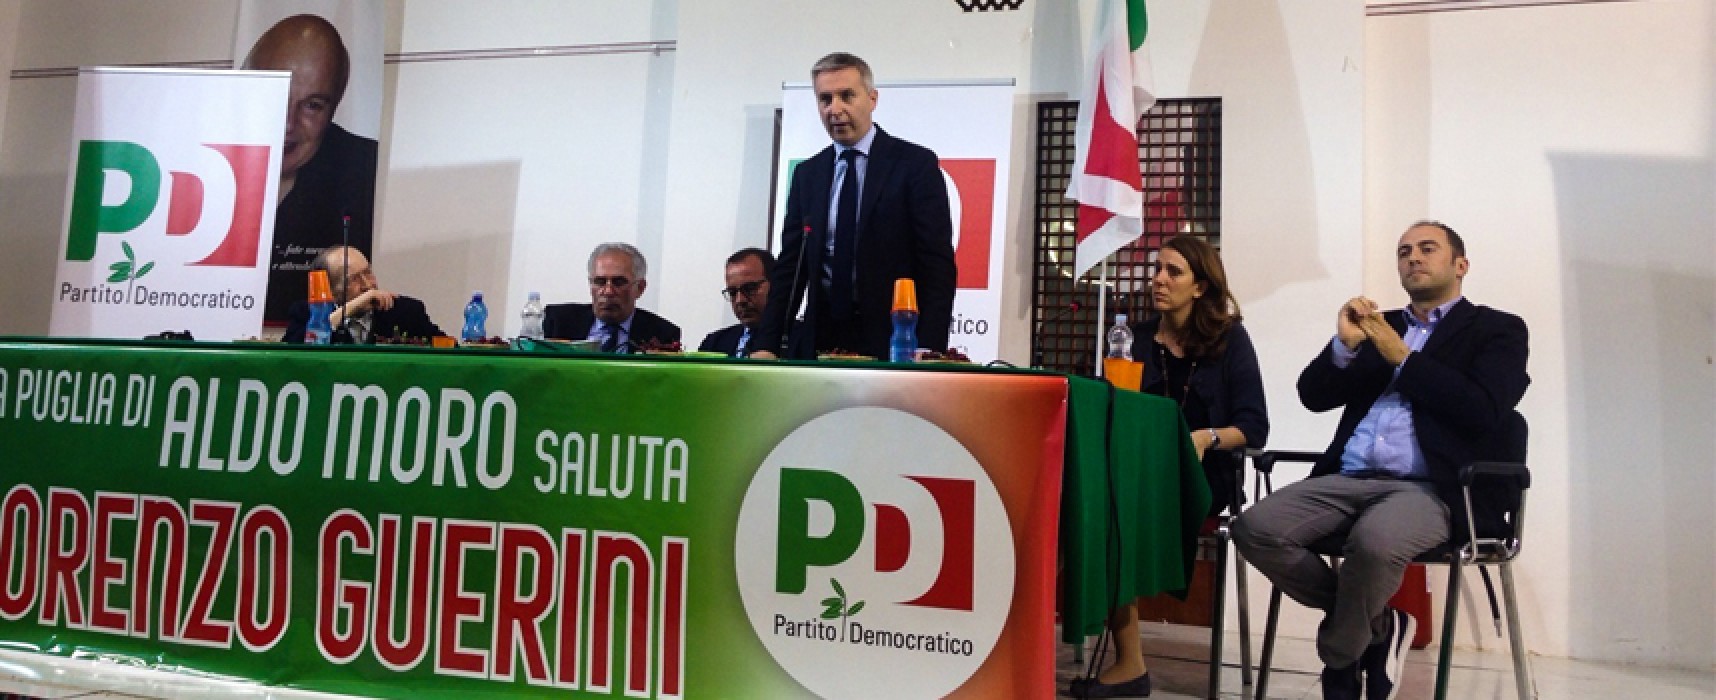 Il vicesegretario Pd Guerini a Bisceglie: “Noi diversi dai partiti personali, stiamo cambiando l’Italia”